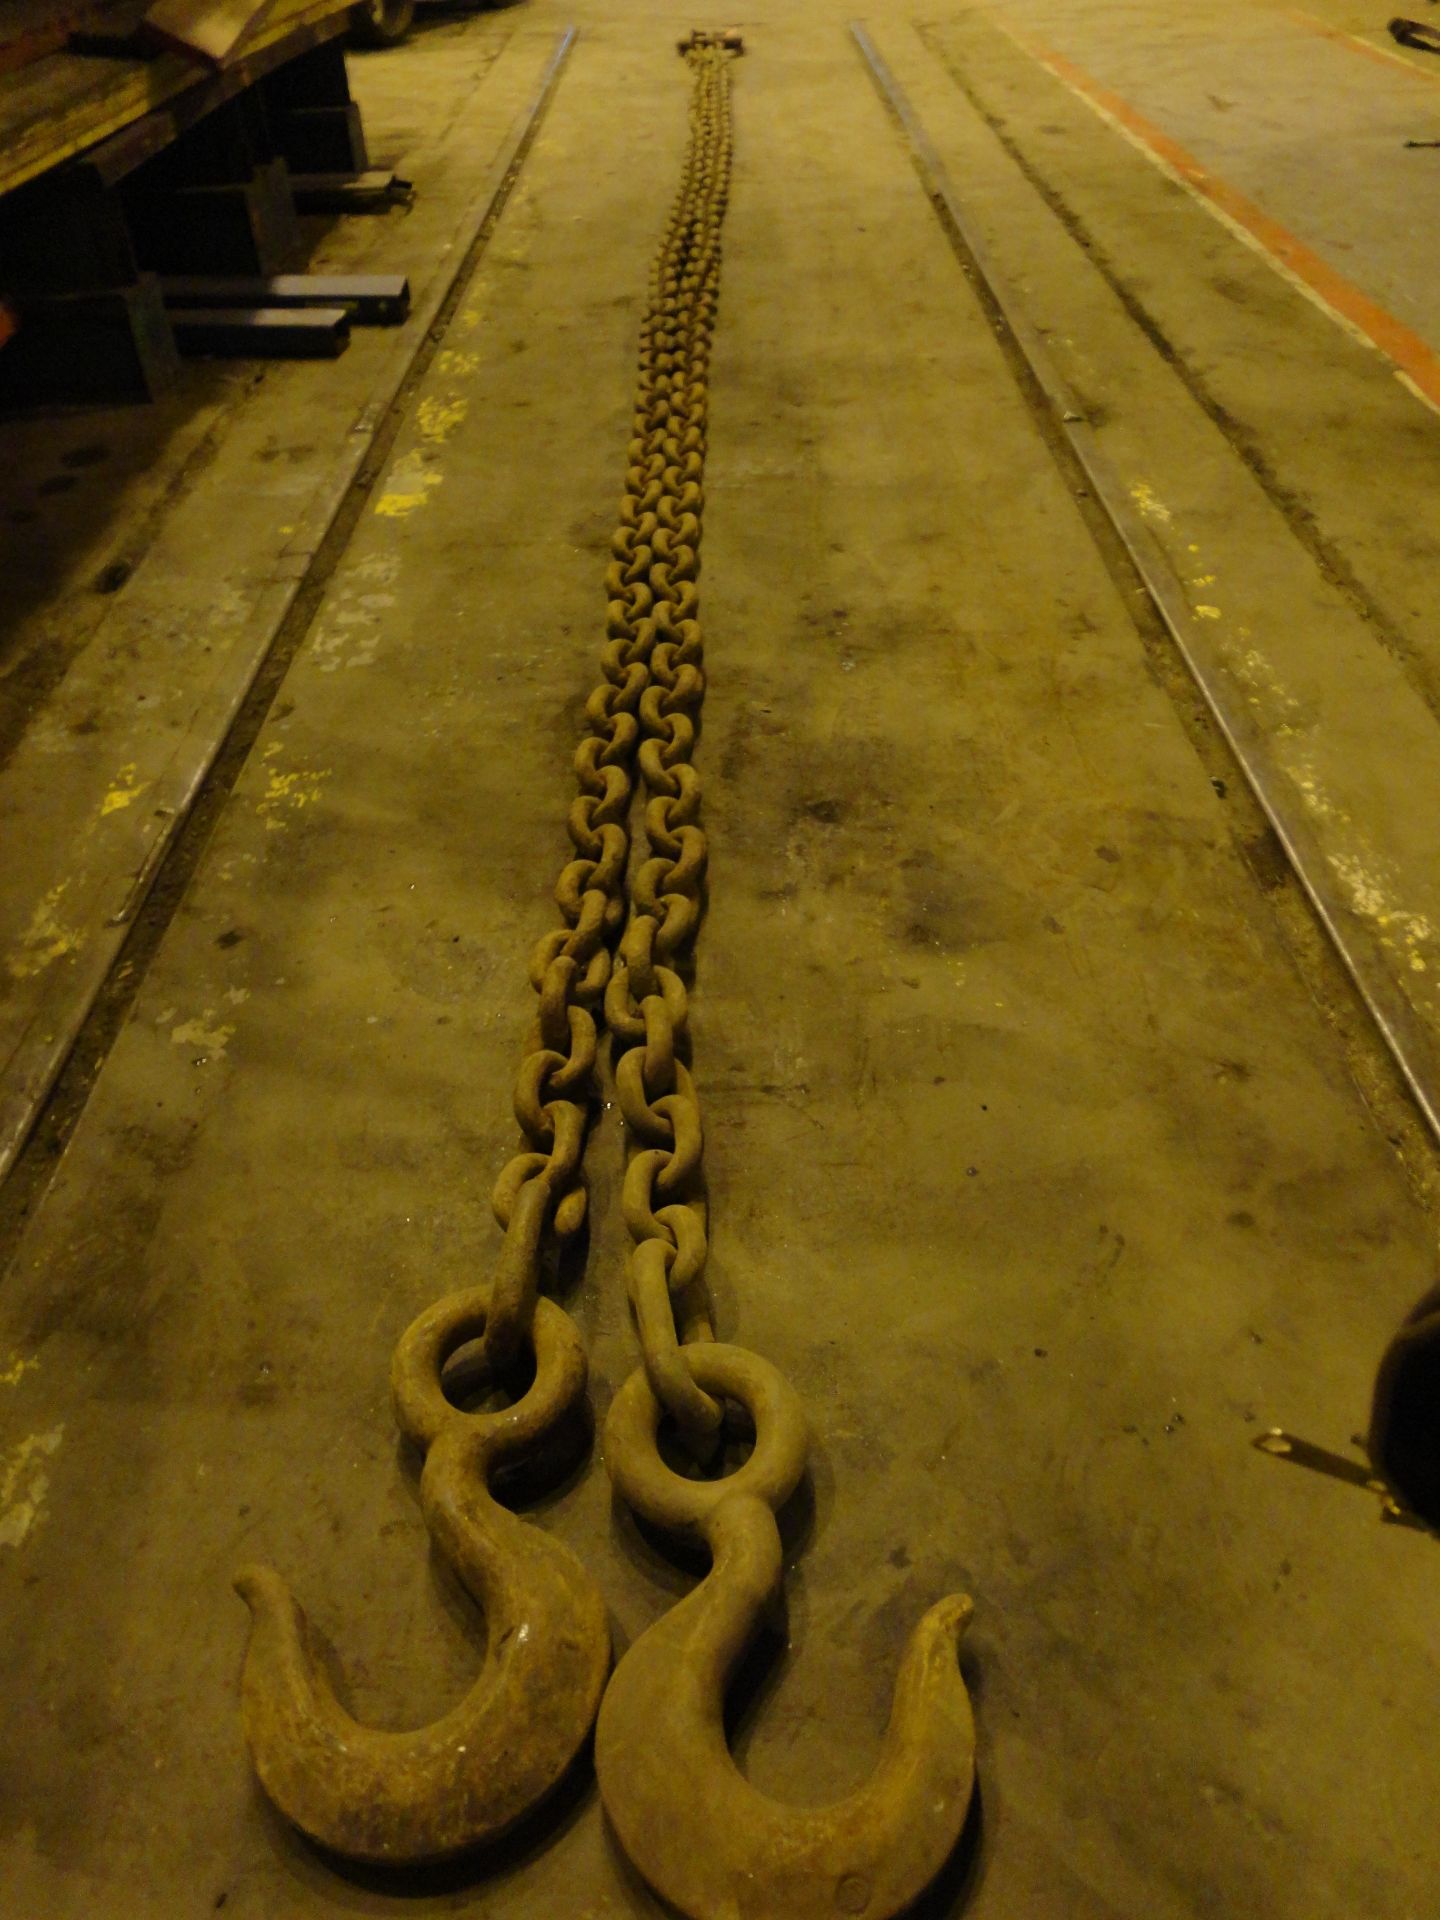 Chain - 1" x 25'